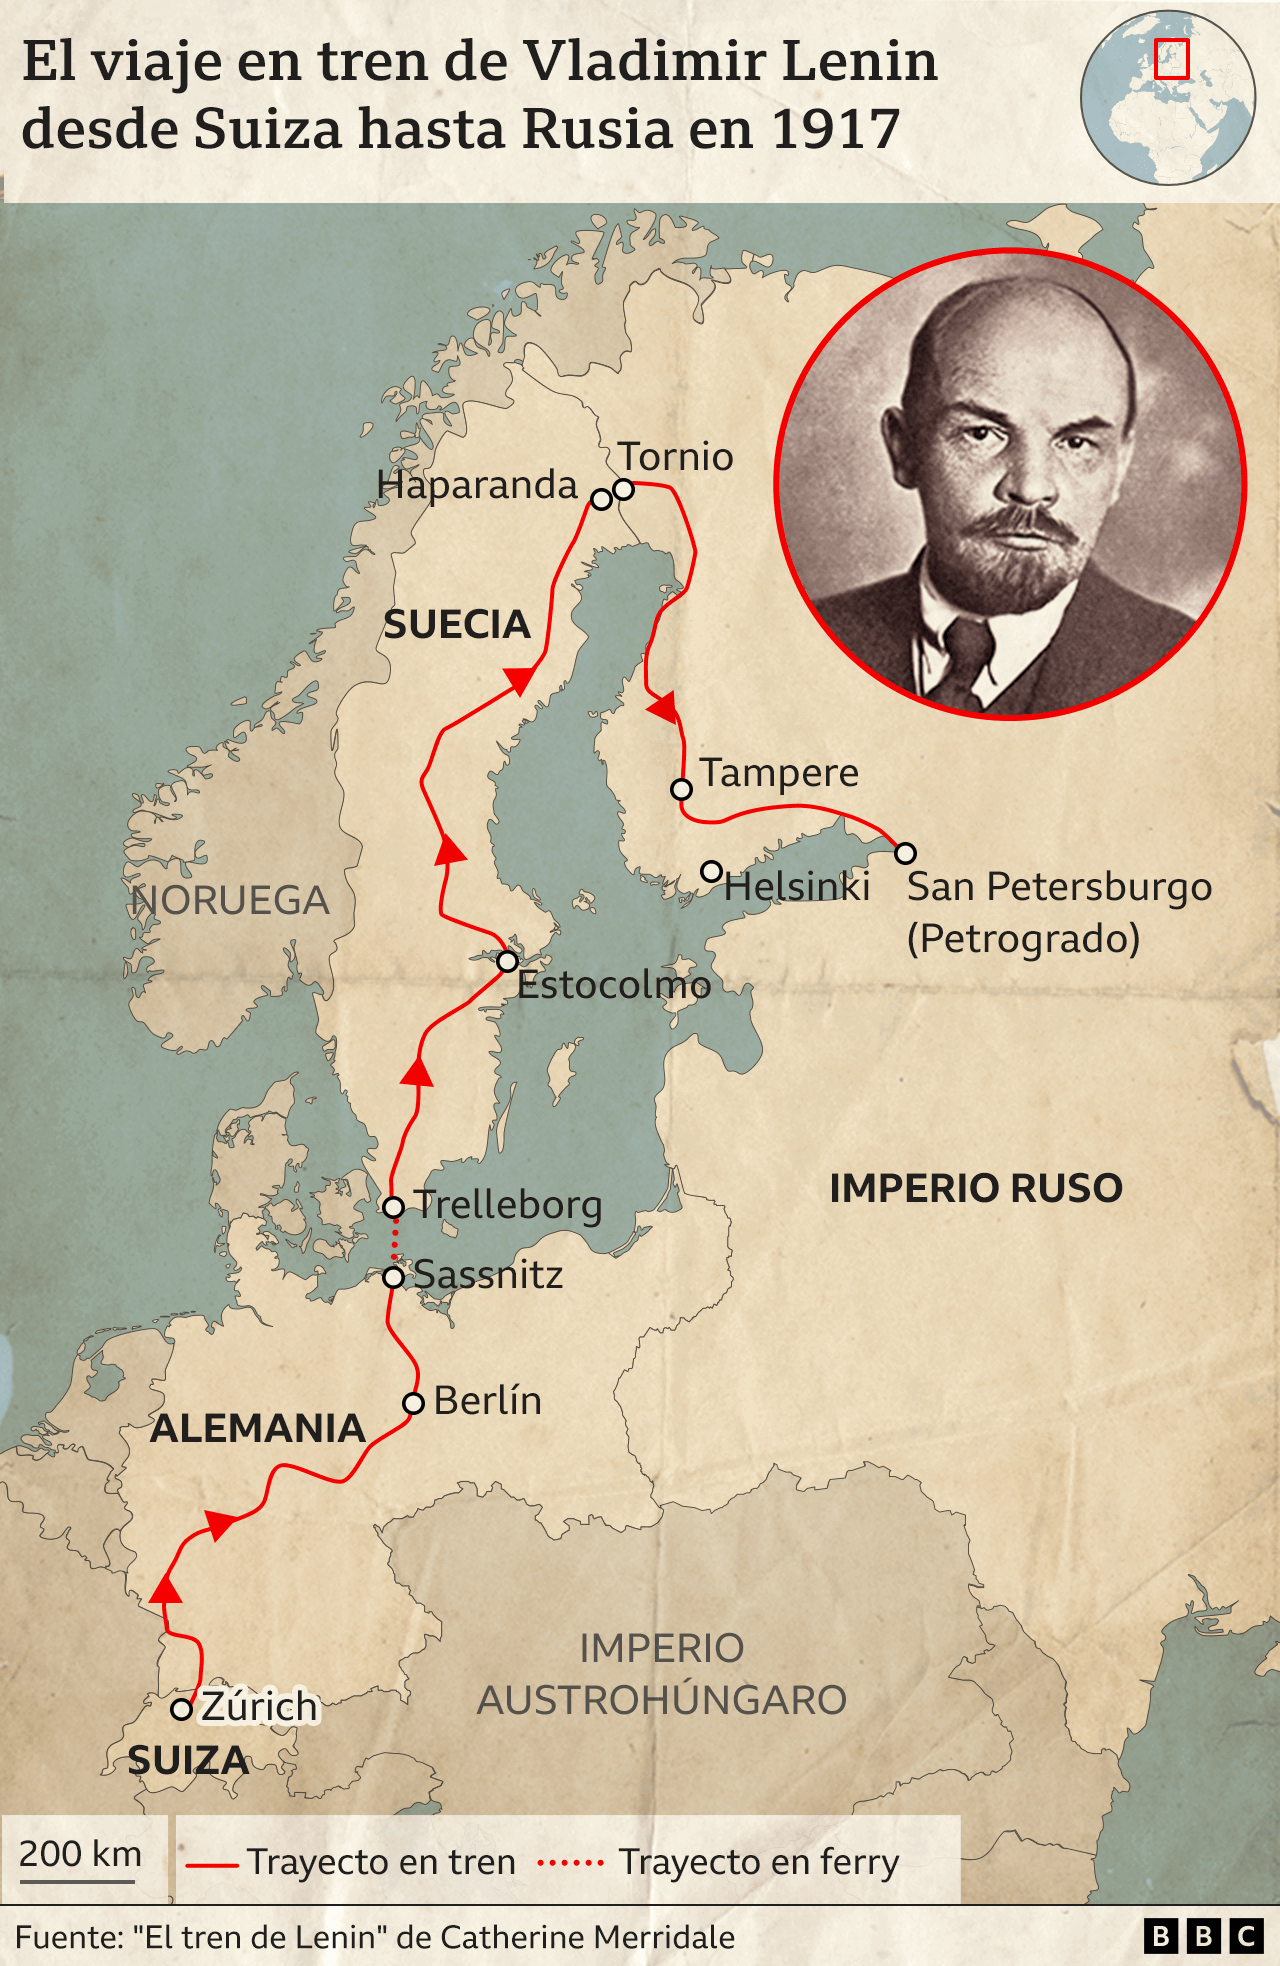 Mapa del viaje de Lenin desde Suiza hasta Rusia